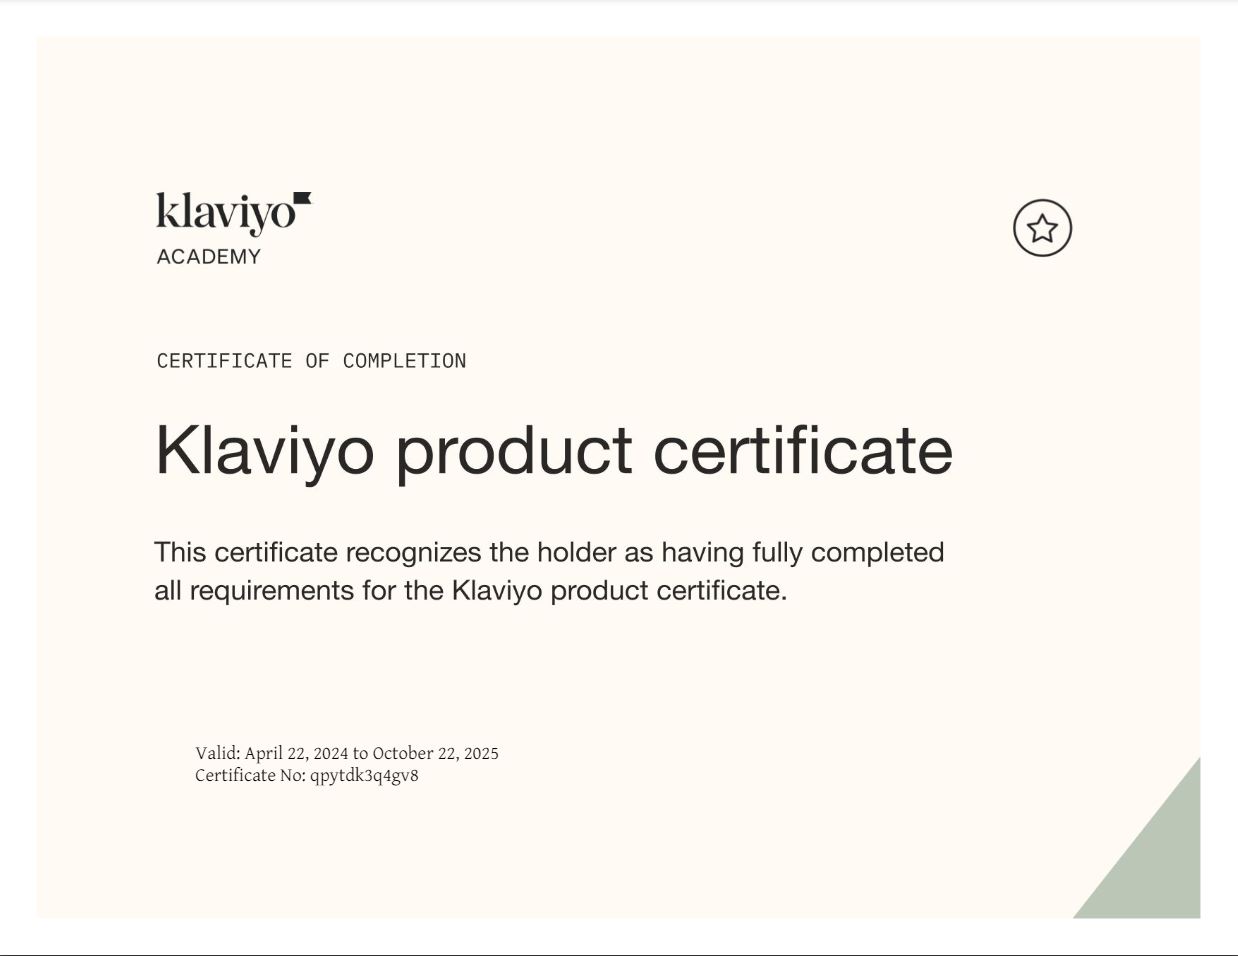 slm_klaviyo_product_cert.JPG